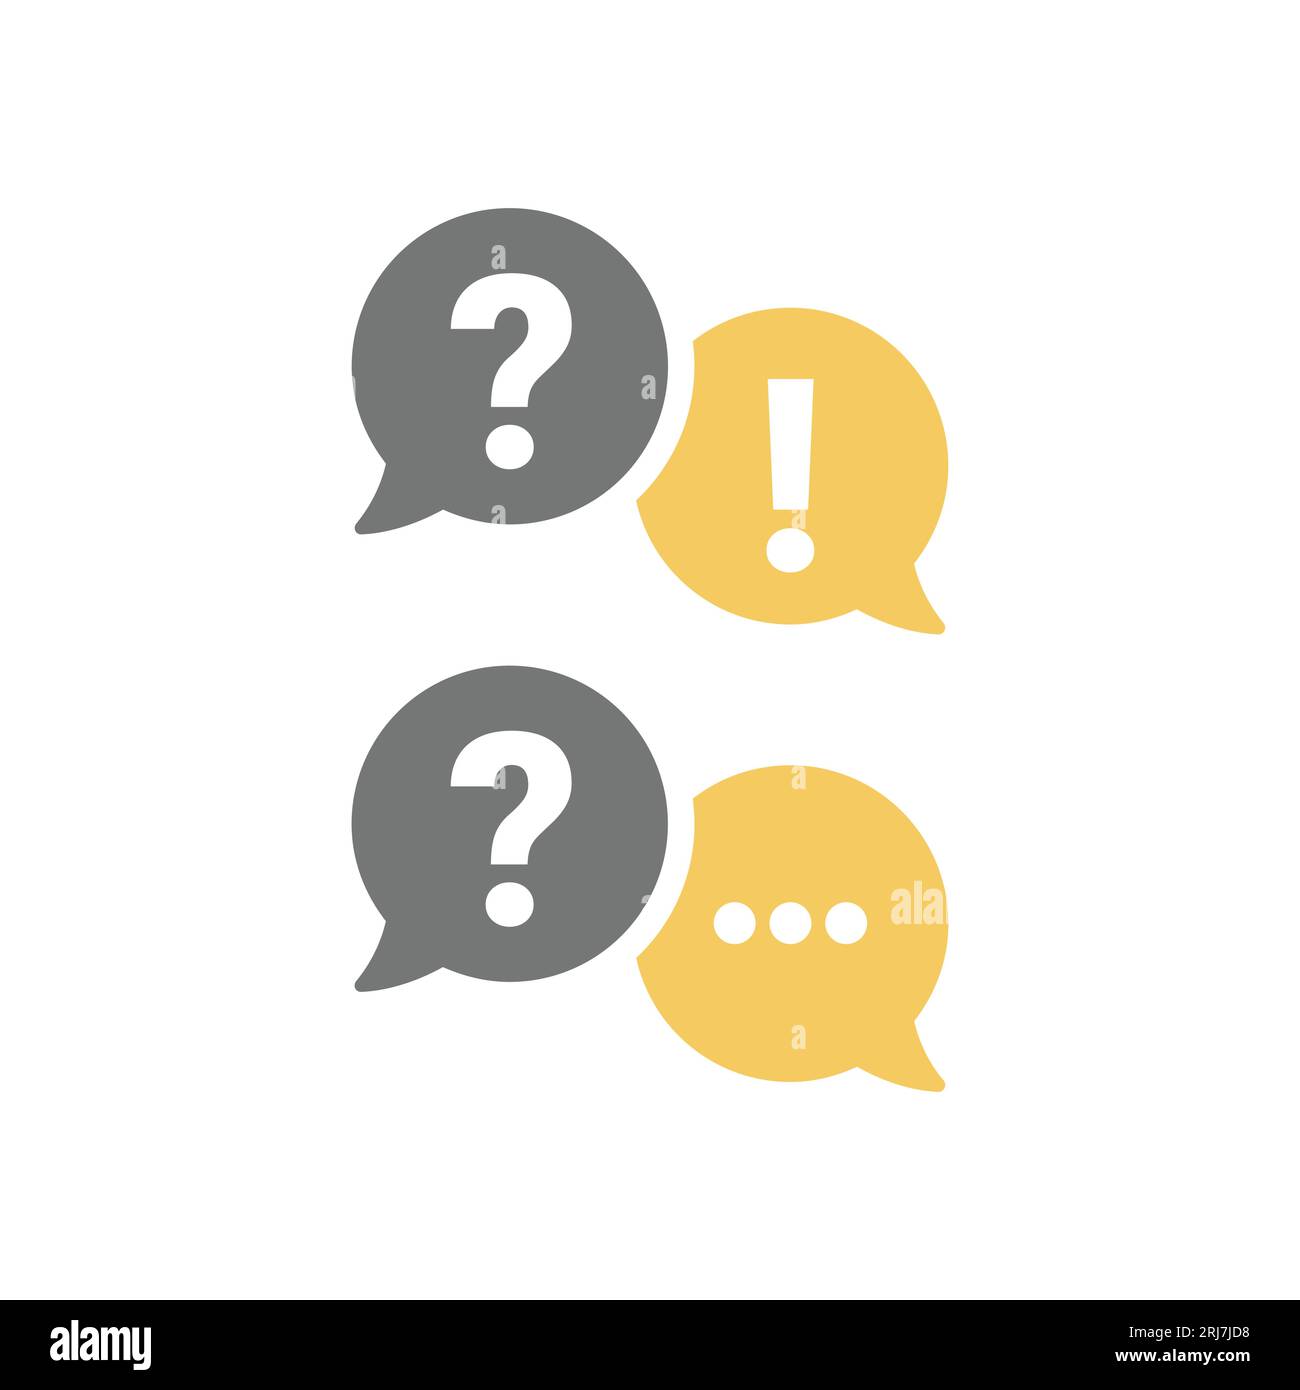 Online-Chat-Blase mit Ausrufezeichen und Fragezeichen. Hilfe und häufig gestellte Fragen, Kommunikation und Sprechblasen-Vektor-Symbolsatz. Stock Vektor